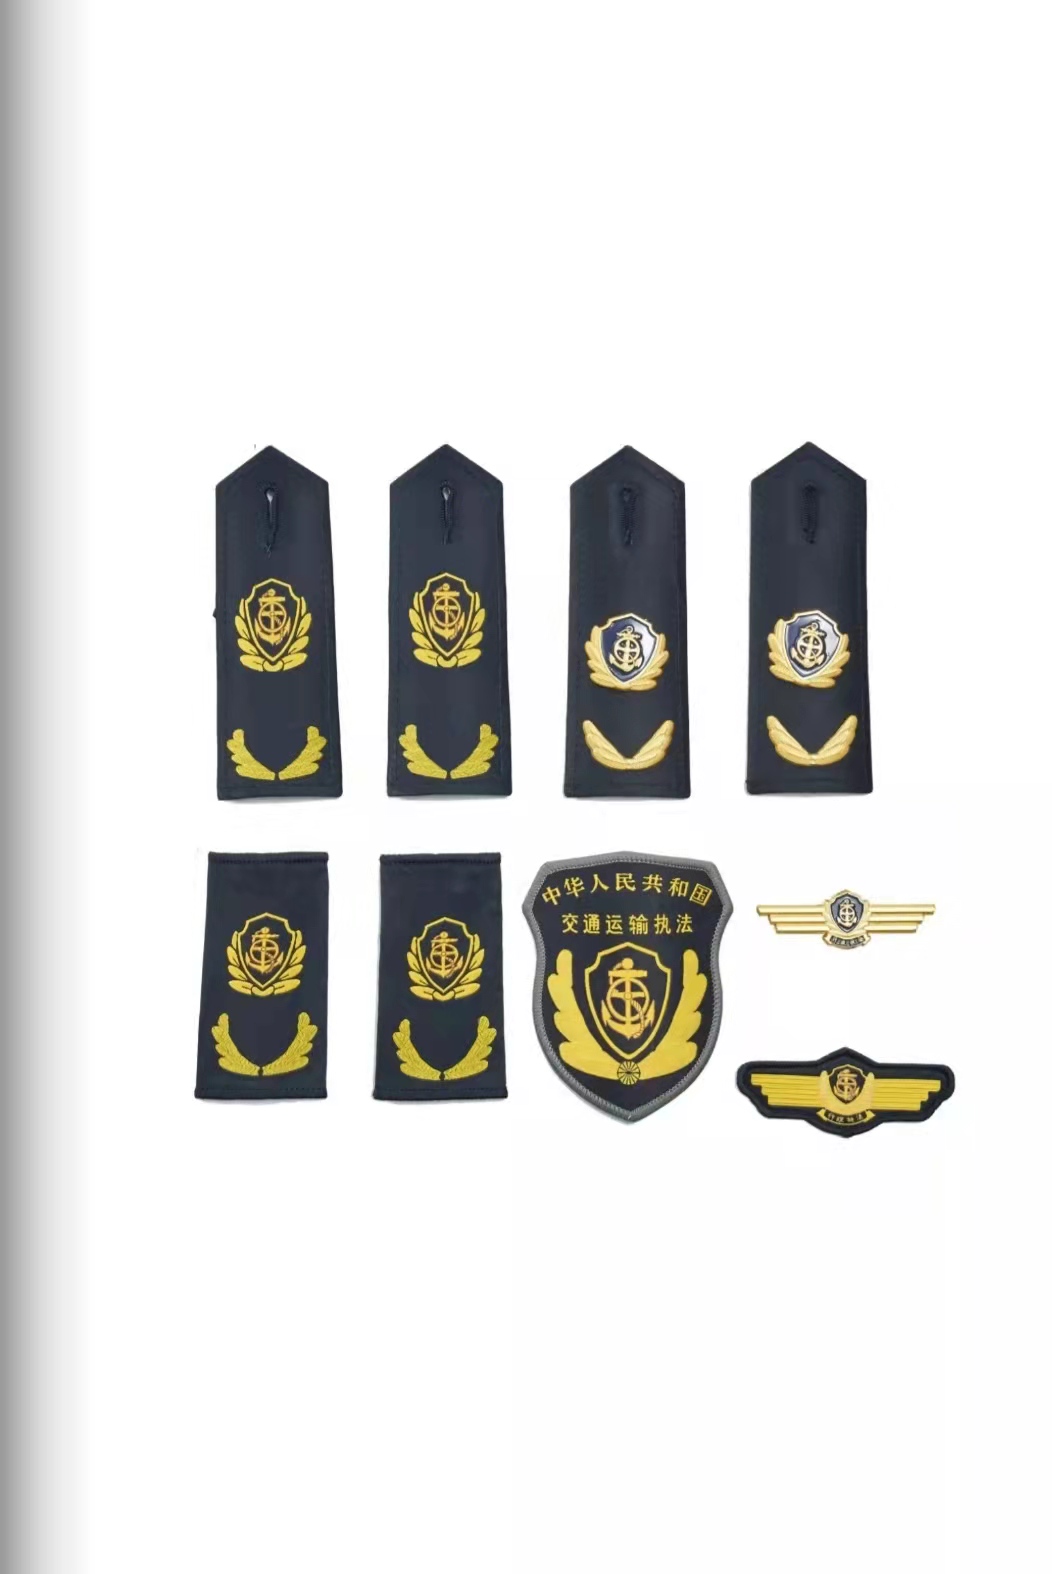 乌海六部门统一交通运输执法服装标志